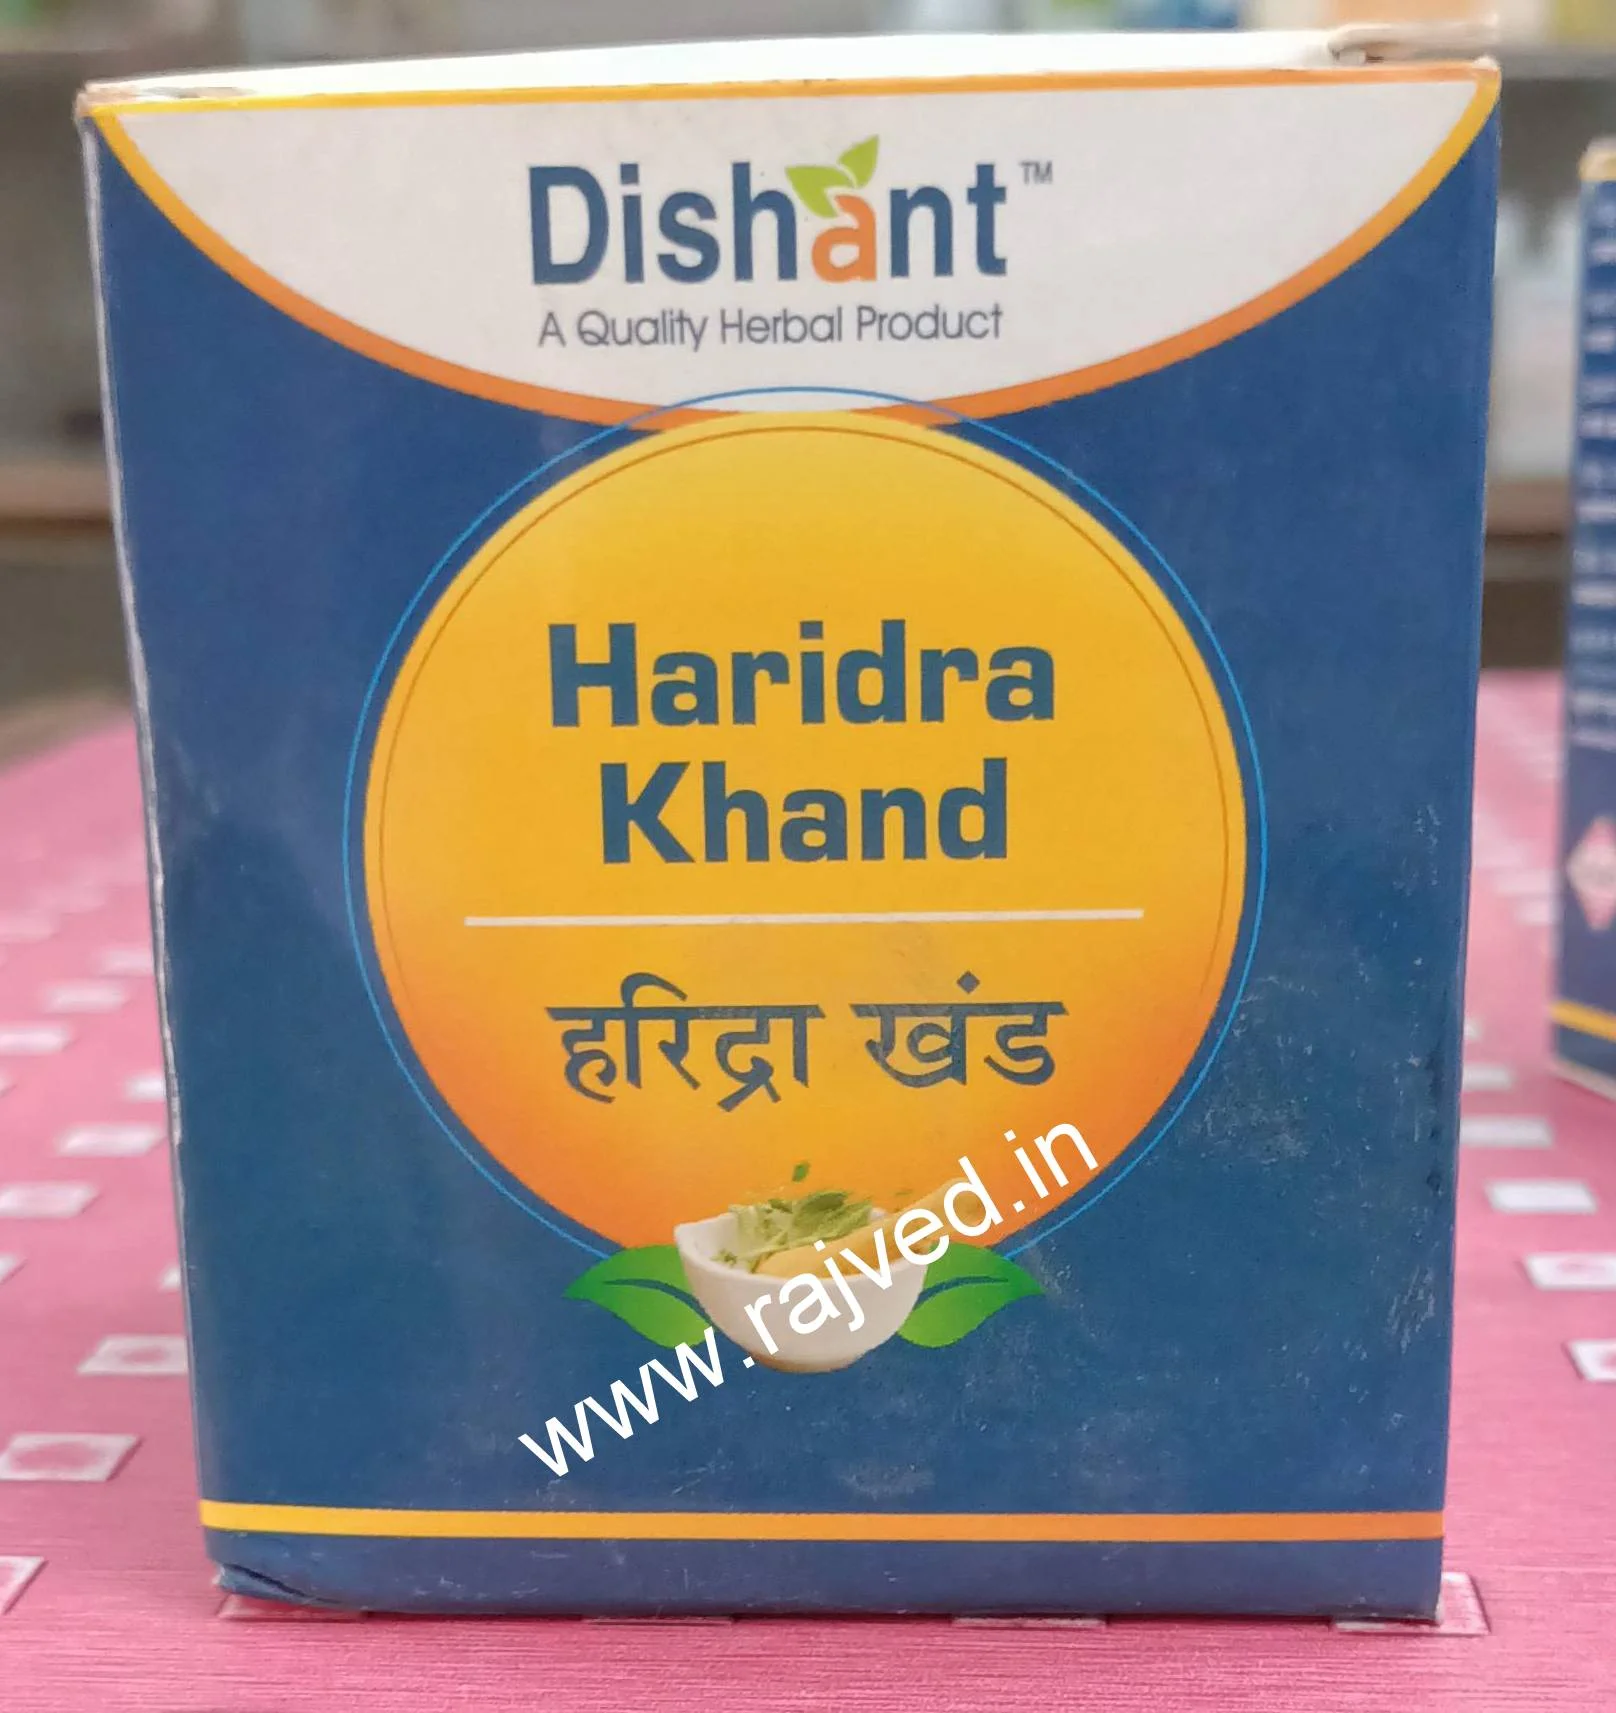 haridra khand 400 gm upto 20% off dishant ayurvedic suppliers